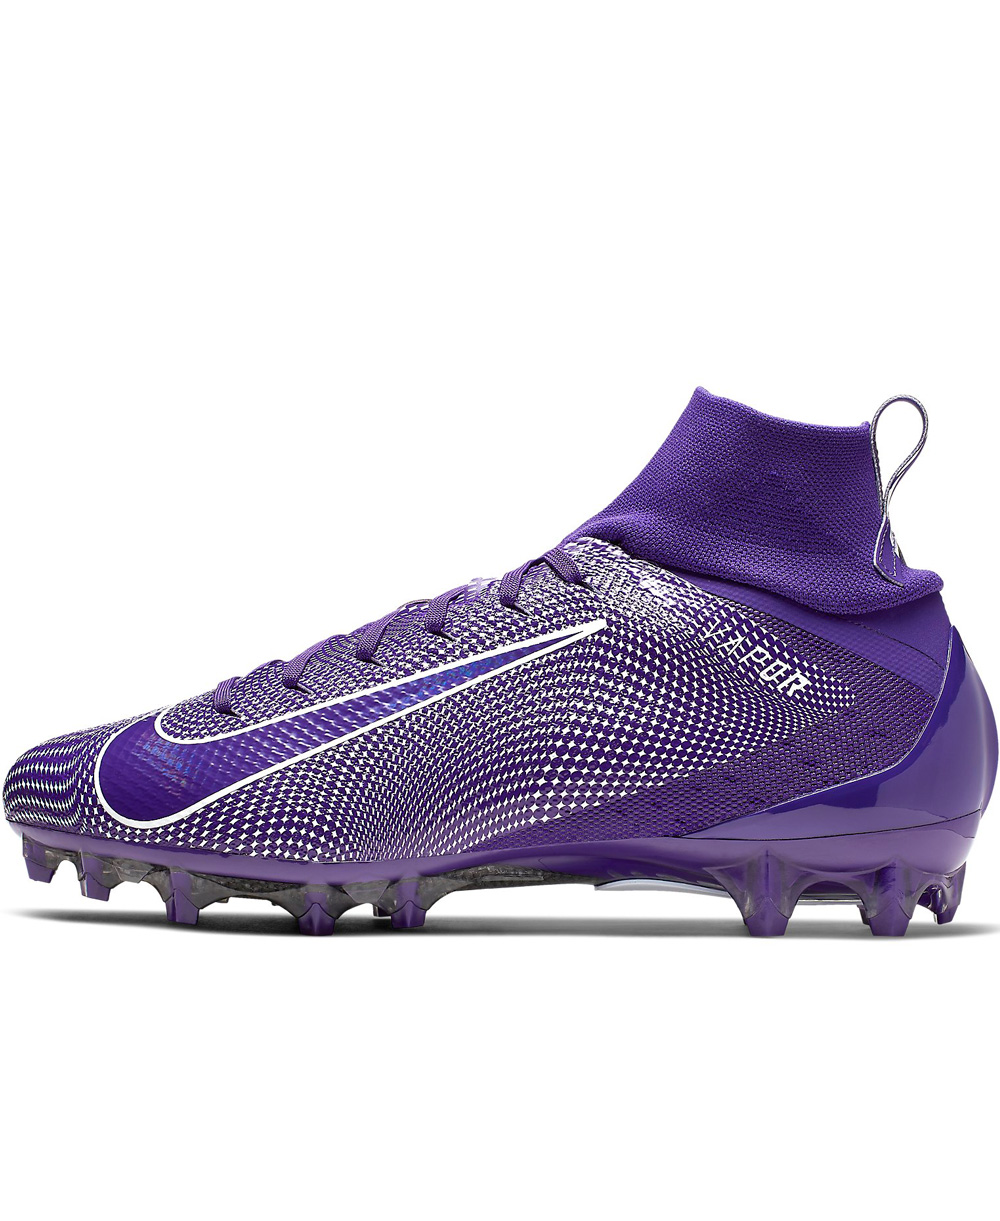 purple lacrosse cleats